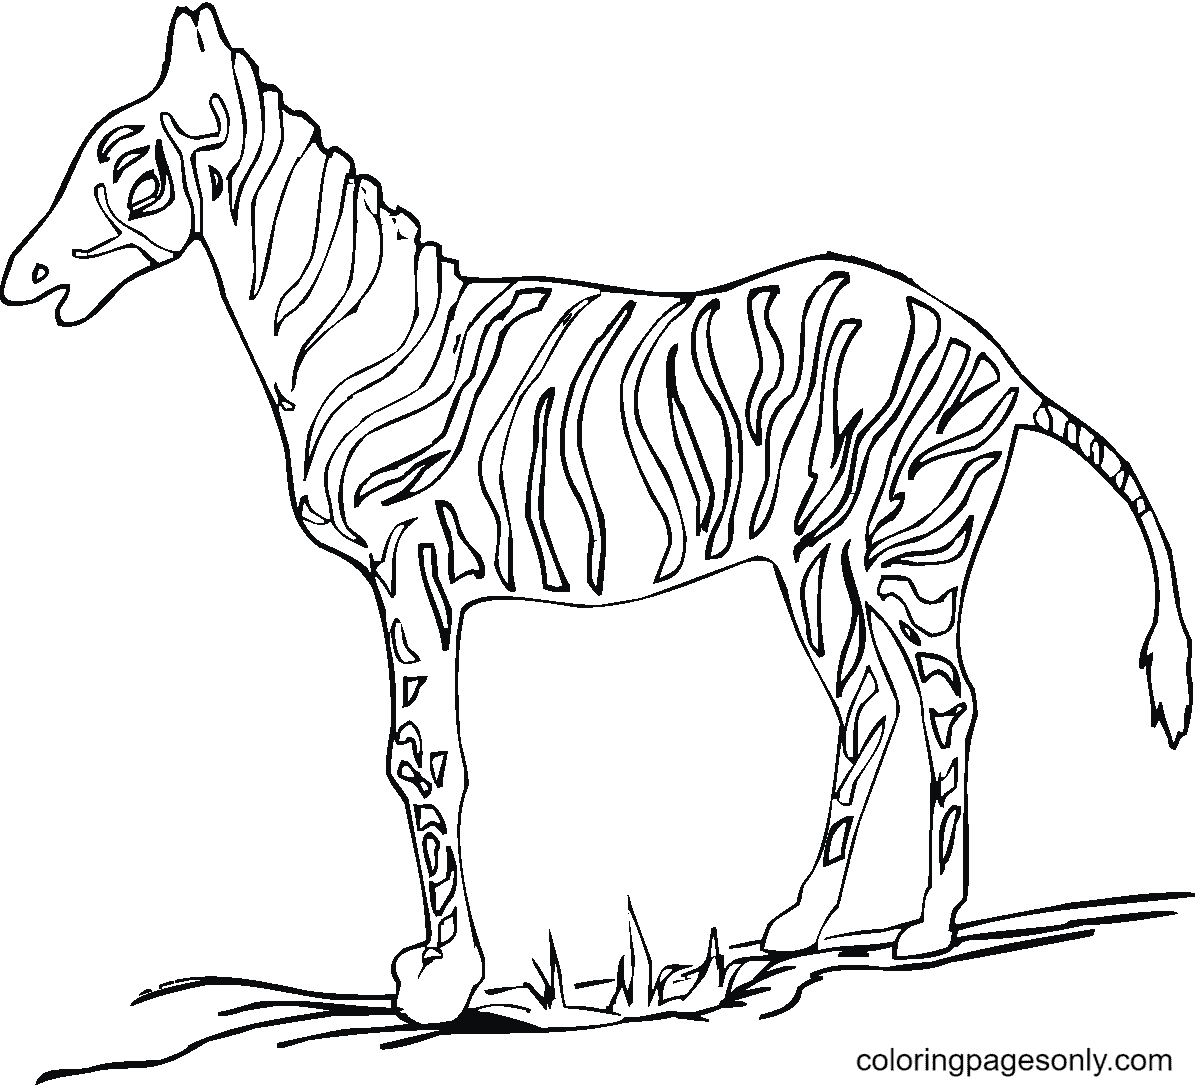 Una zebra sull'erba from Zebra